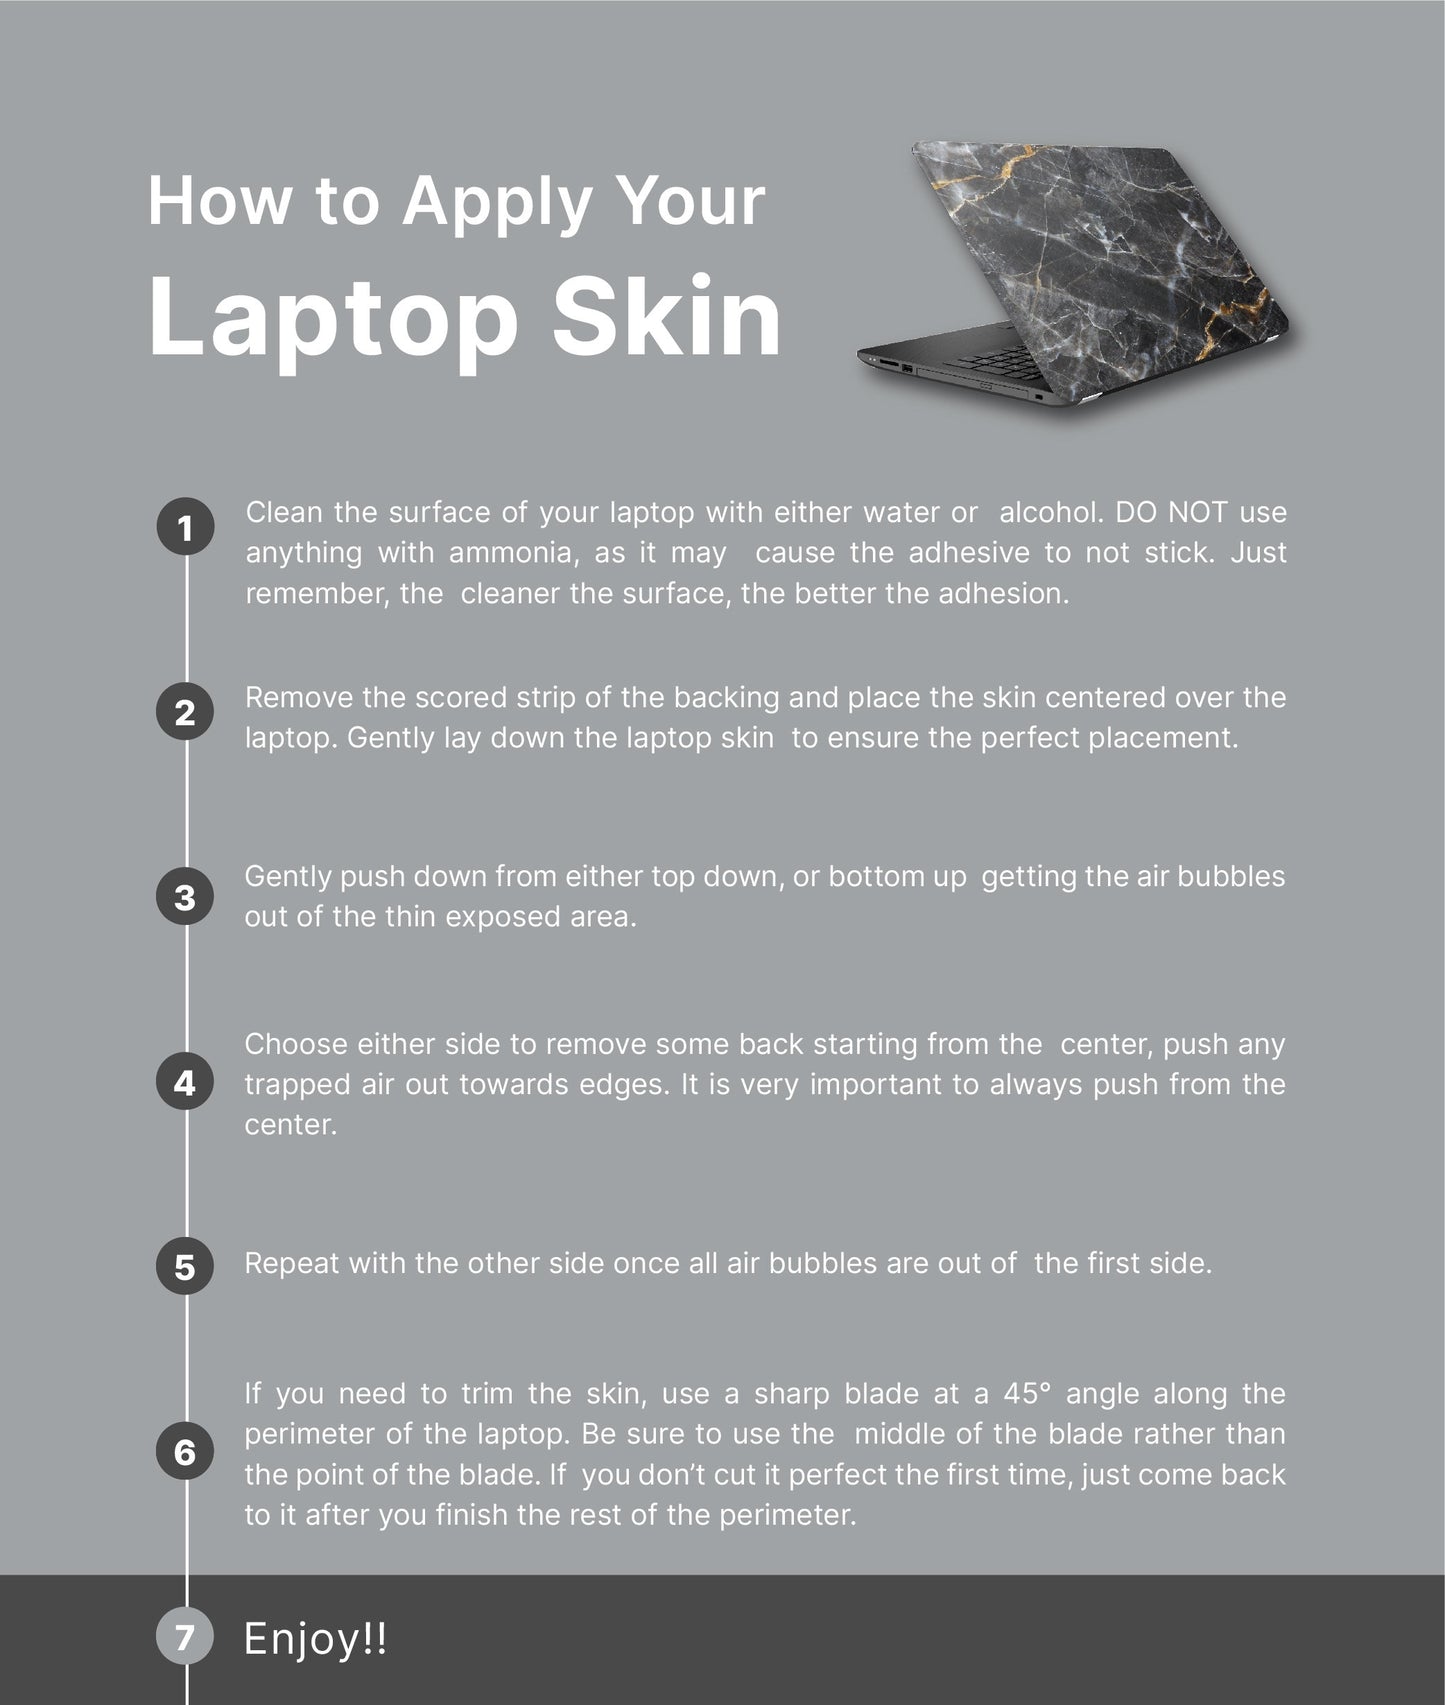 Boho Cactus Cute Laptop Skin, Laptop Cover, Laptop Skins, Removable Laptop Skins, Laptop Decal, Customized Laptop Skin, Laptop Stickers 106 - James & Inks